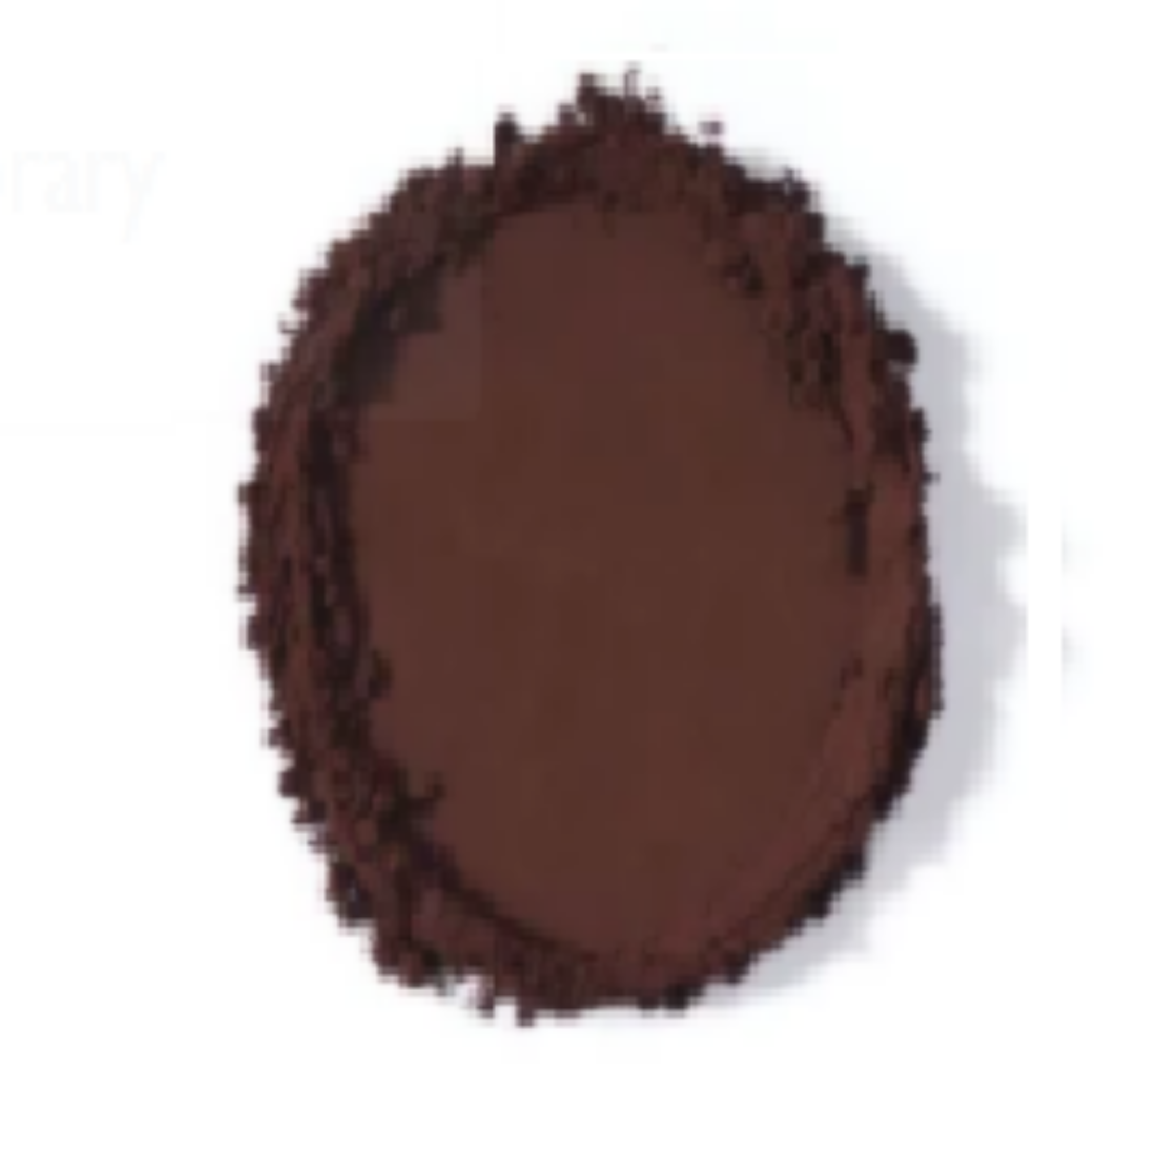 Picture of 25KG BLACK COCOA POWDER (10-12% FAT)